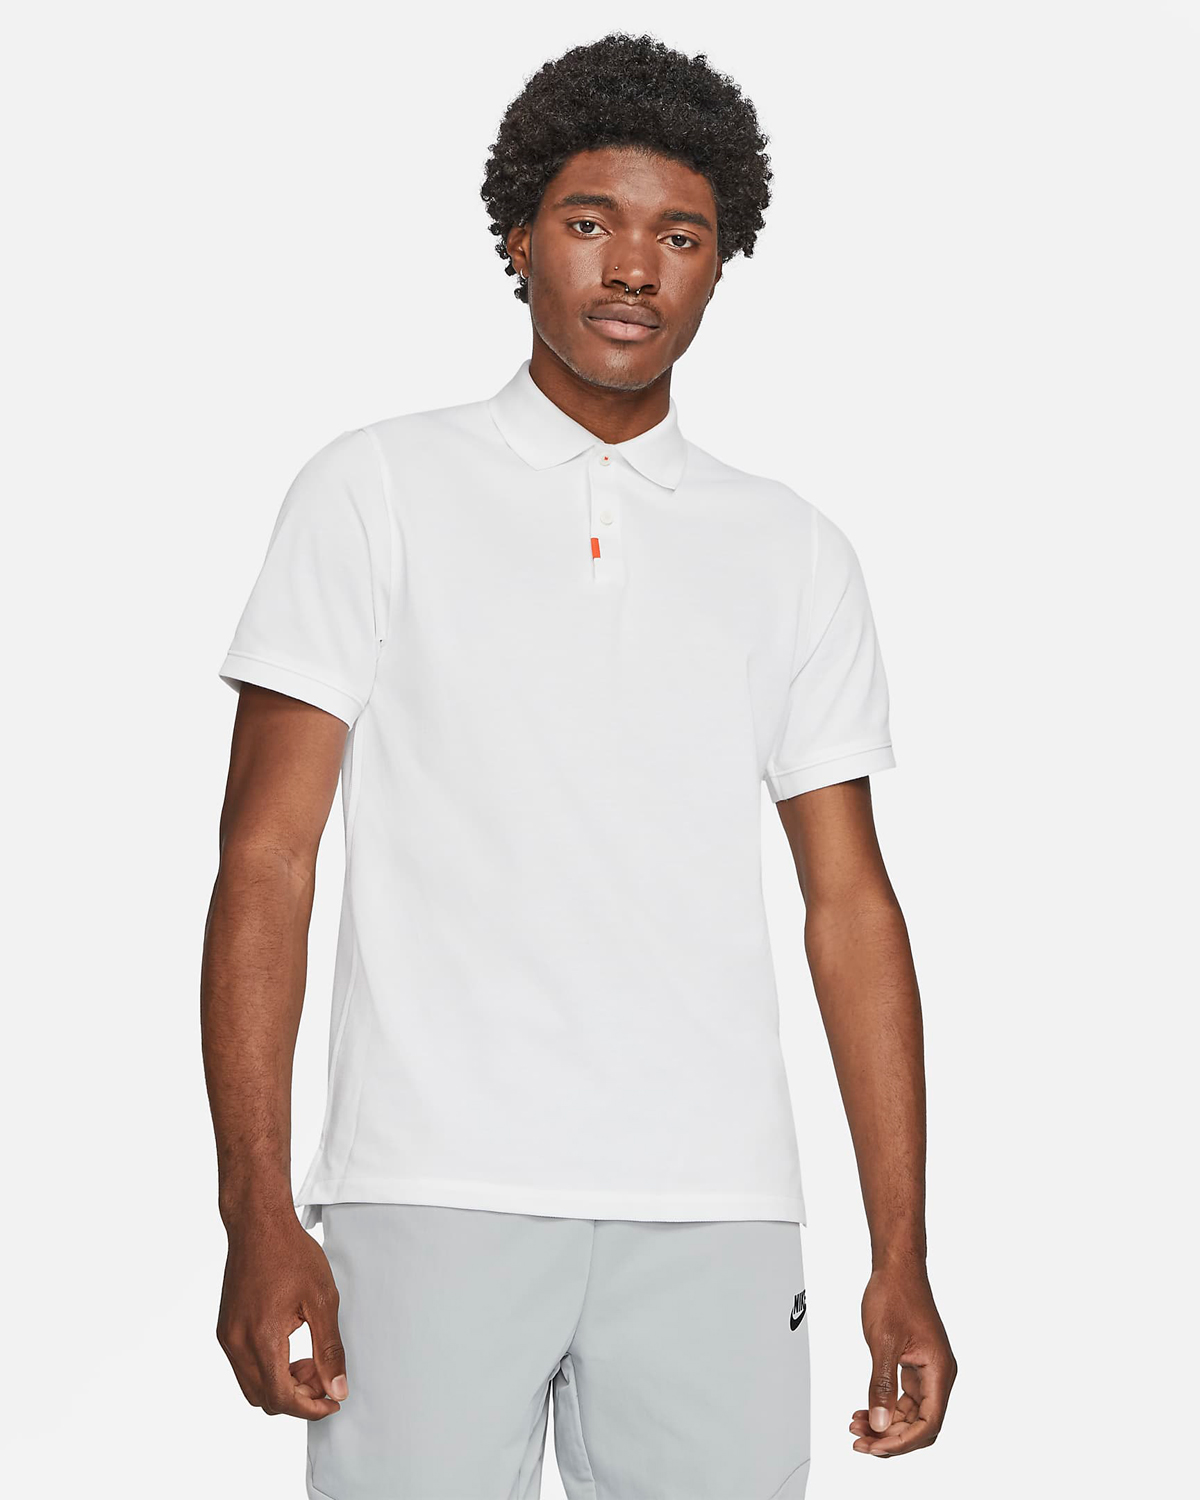 The-Nike-Polo-Shirt-White-Orange